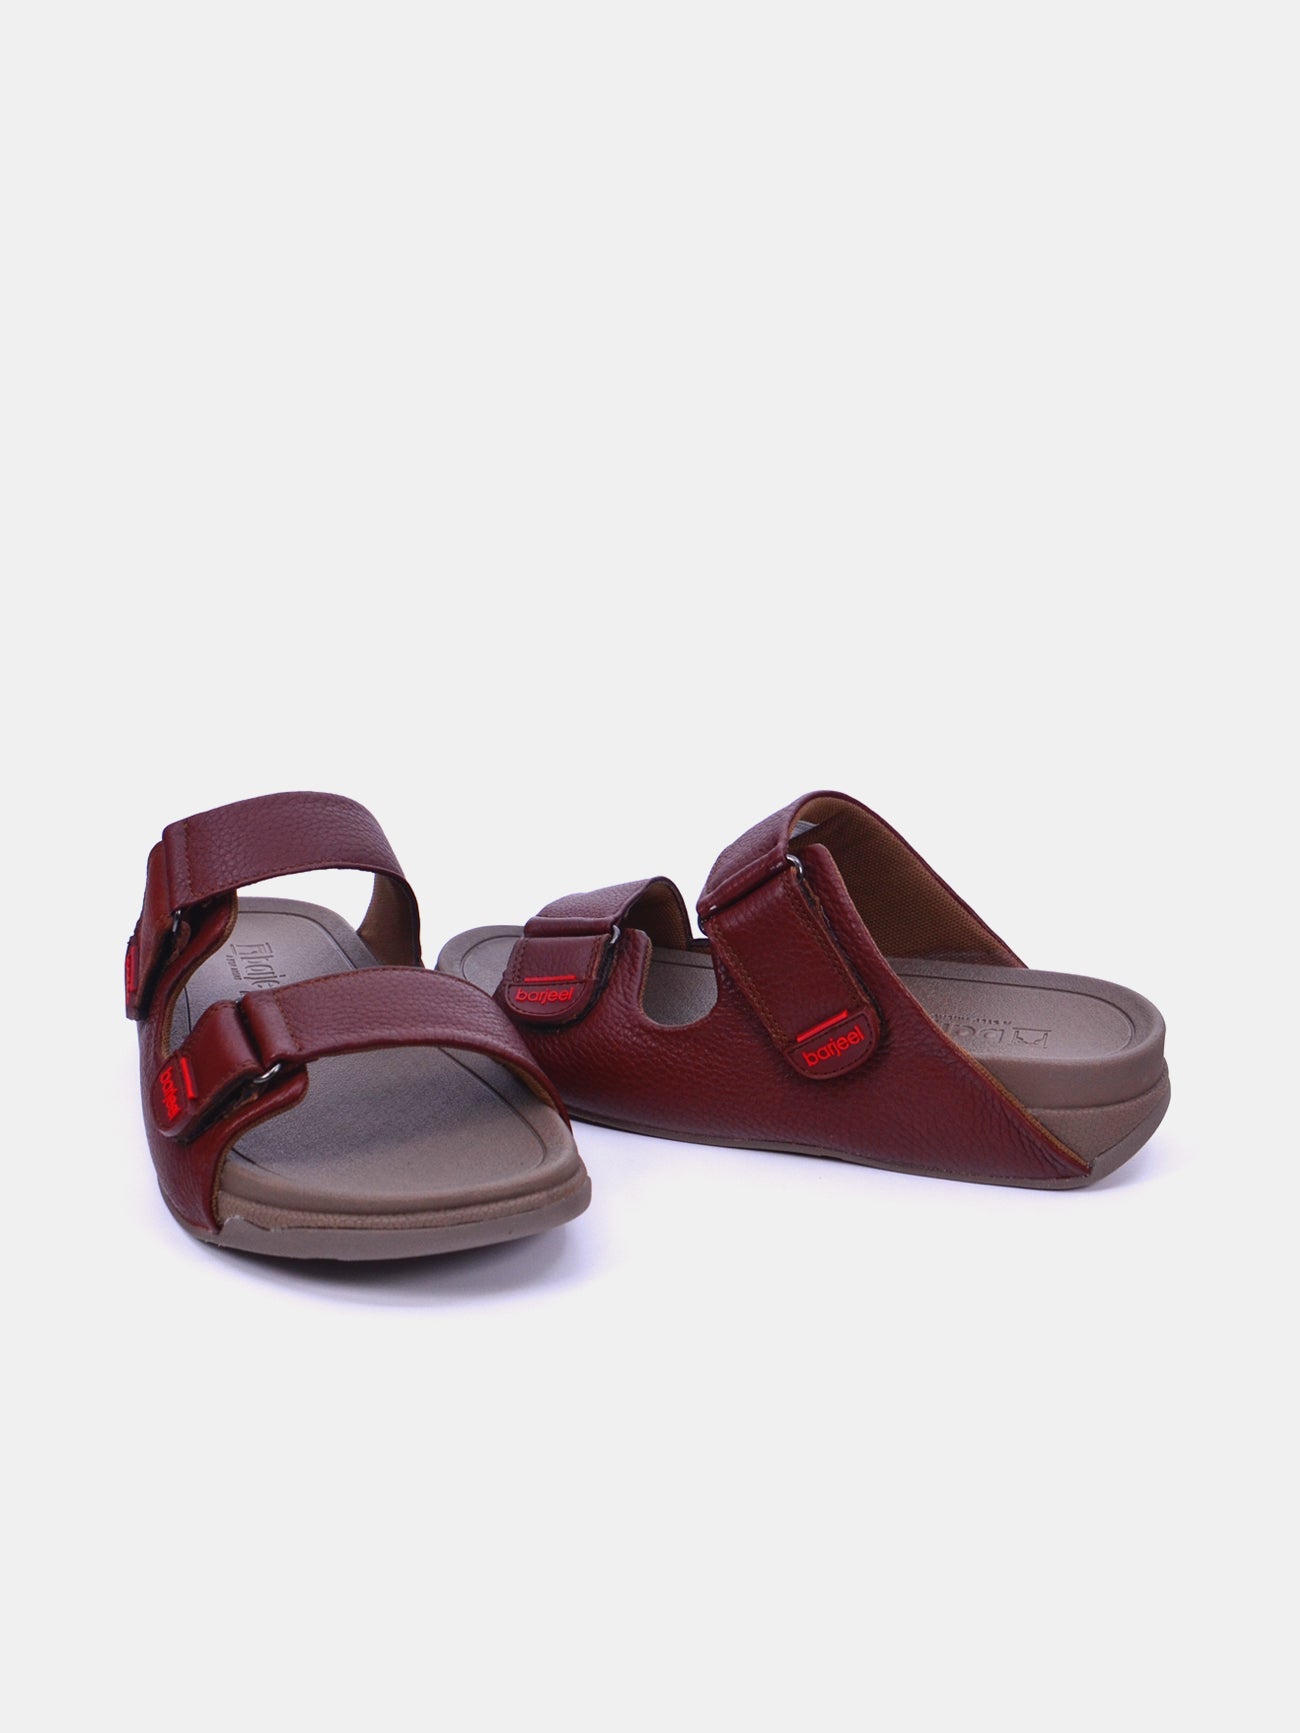 Barjeel Uno 20272 Men's Arabic Sandals #color_Brown